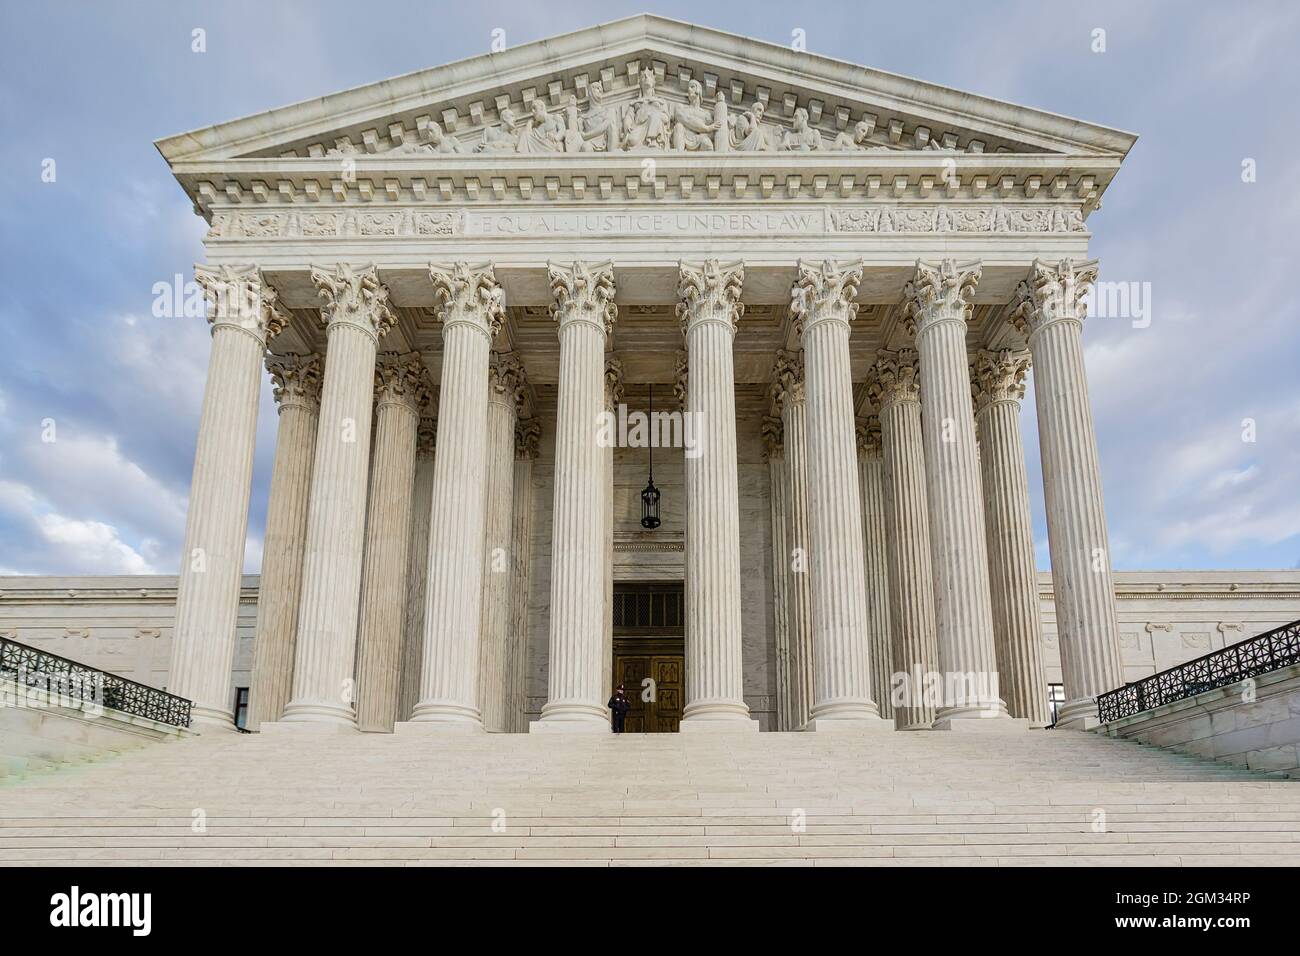 SCOTUS EQUAL Justice DC - Corte Suprema degli Stati Uniti a Washington DC. La più alta corte federale degli Stati Uniti con il suo ar neoclassico Foto Stock